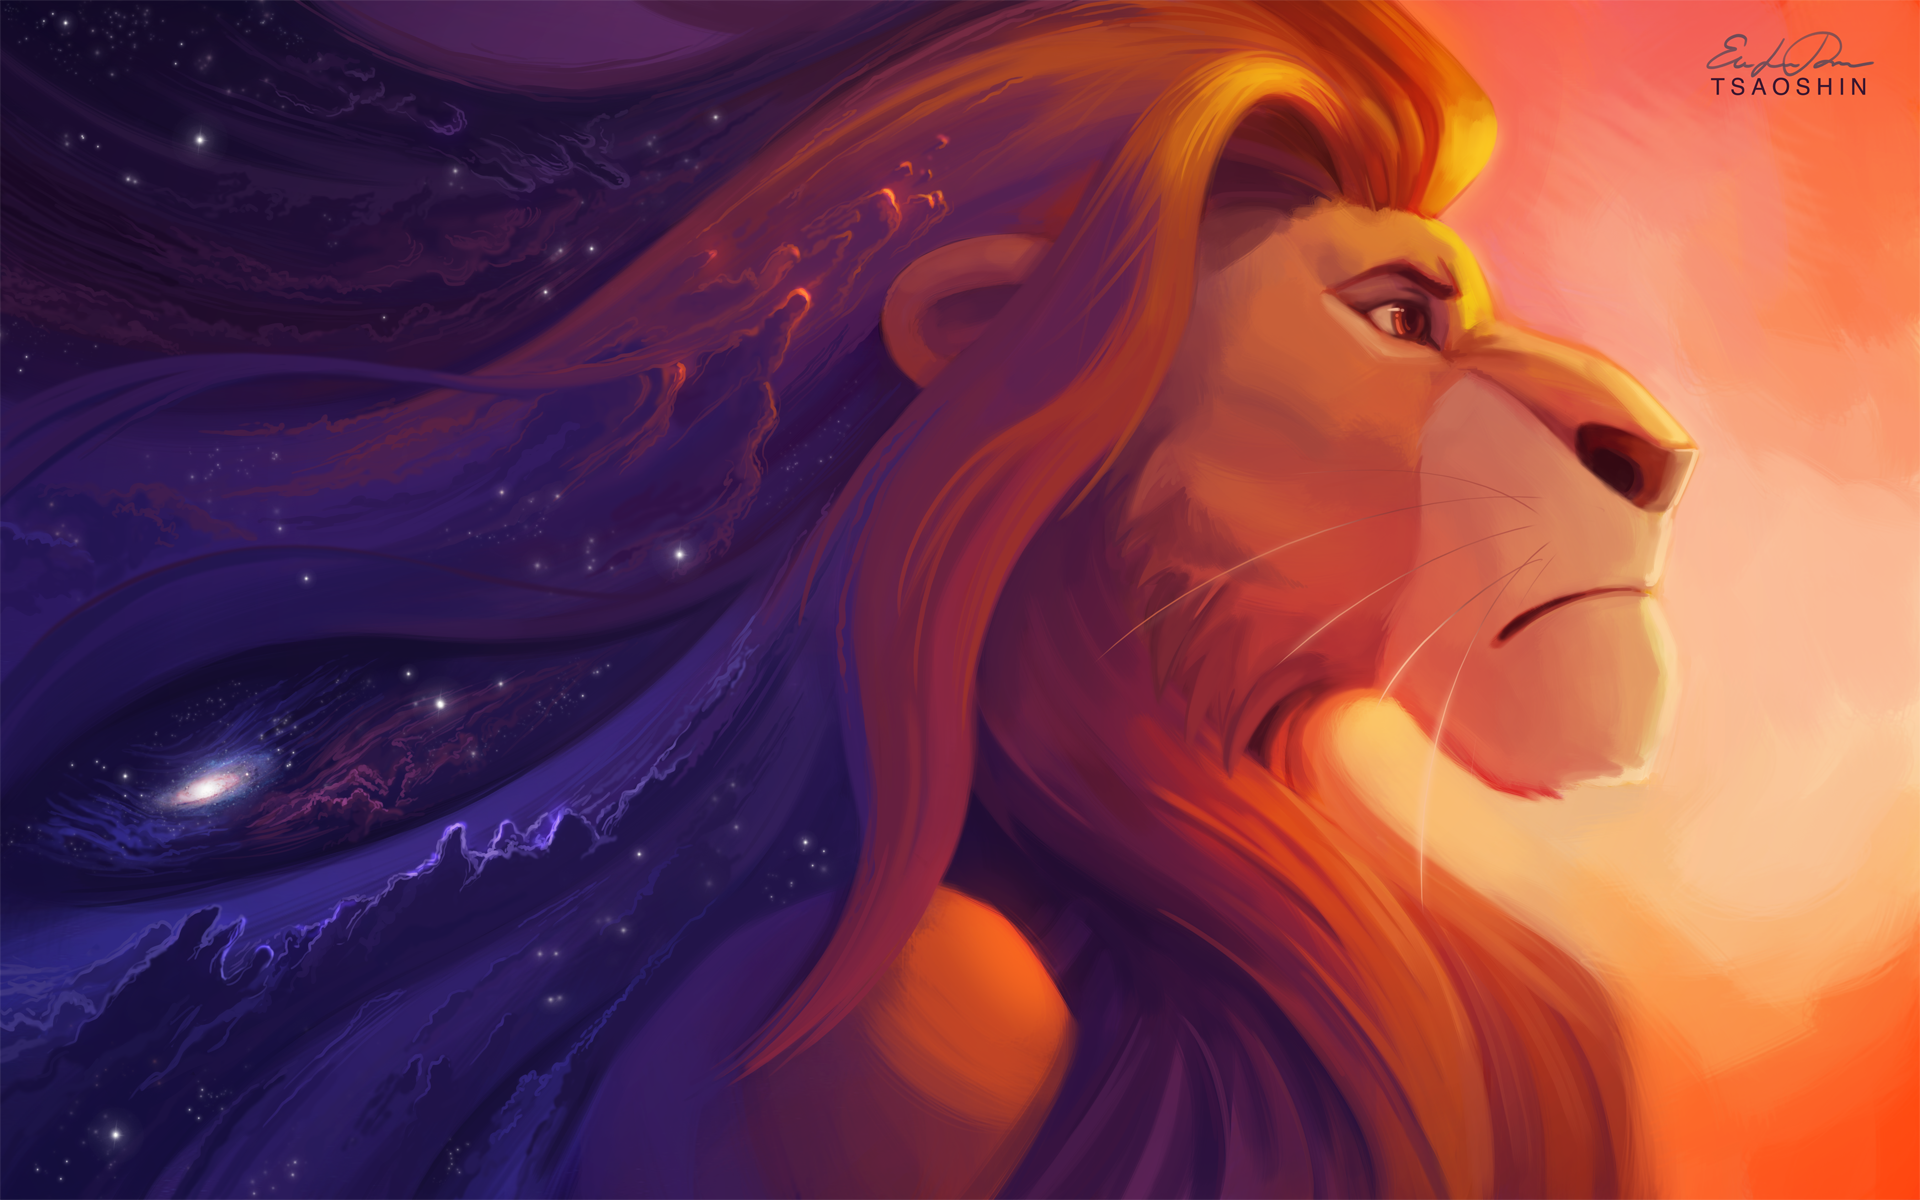 Lion King - HD Wallpaper 